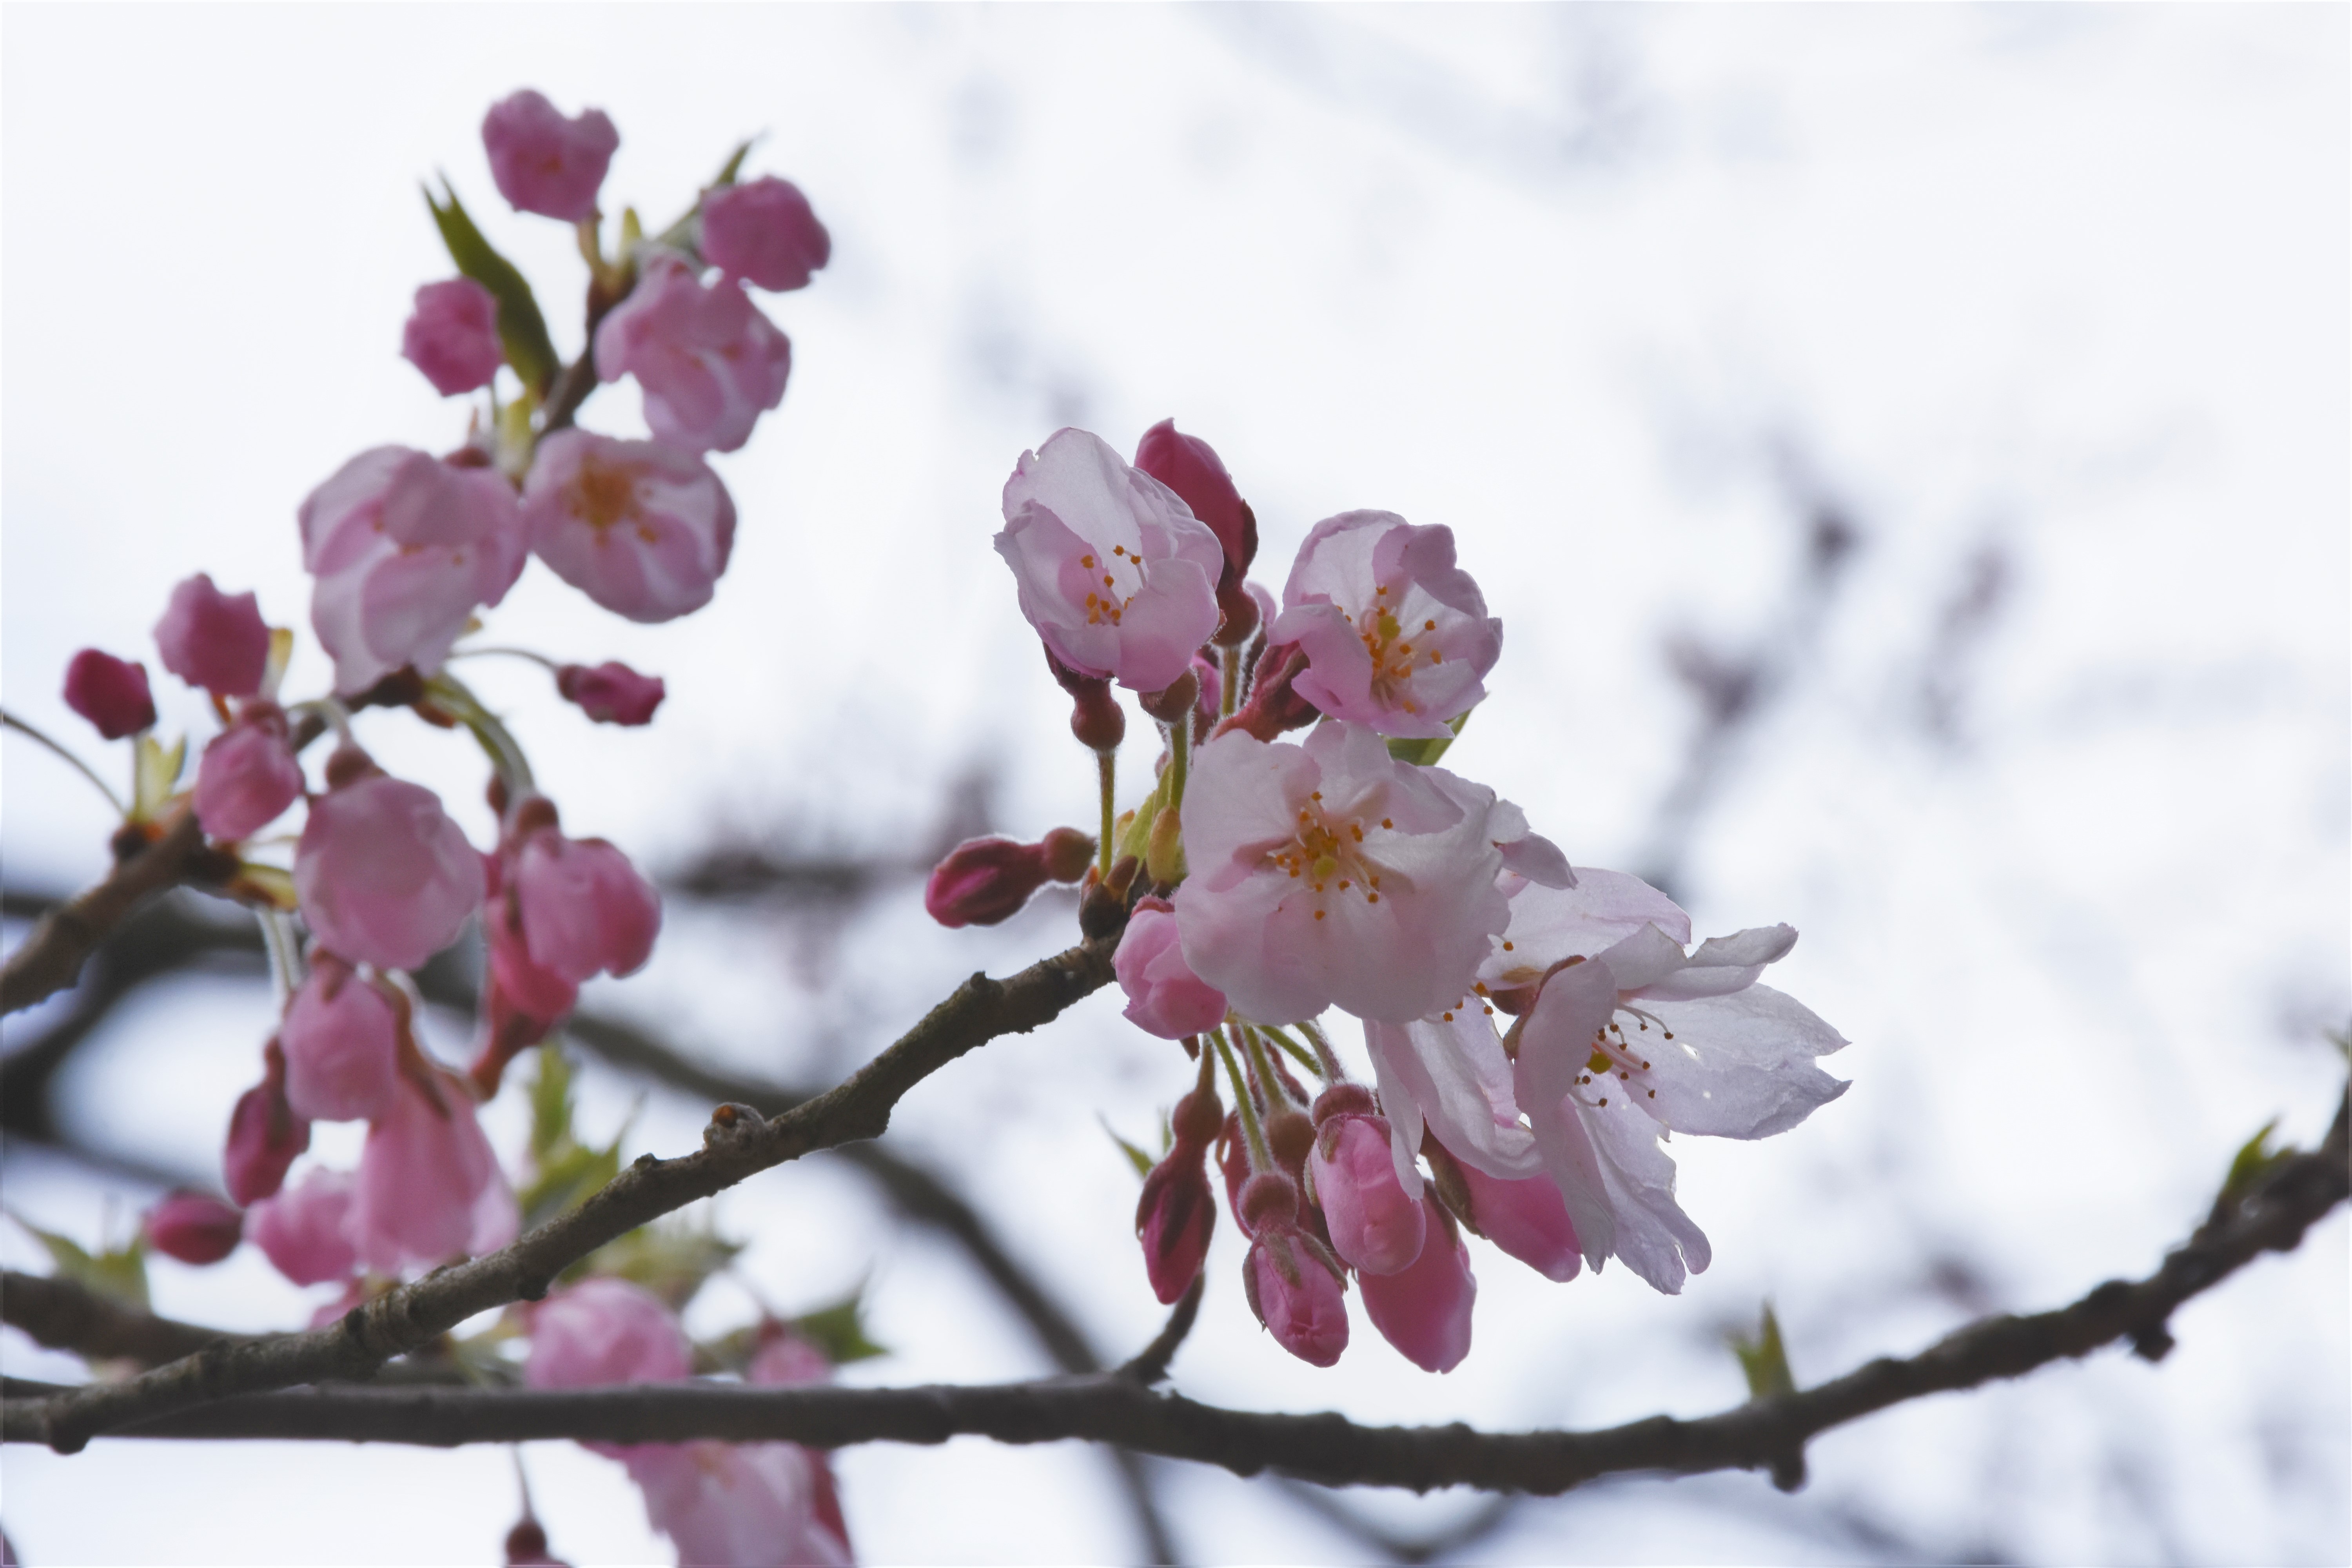 昨日までで桜の開花 発表があった最も北の地点はどこ